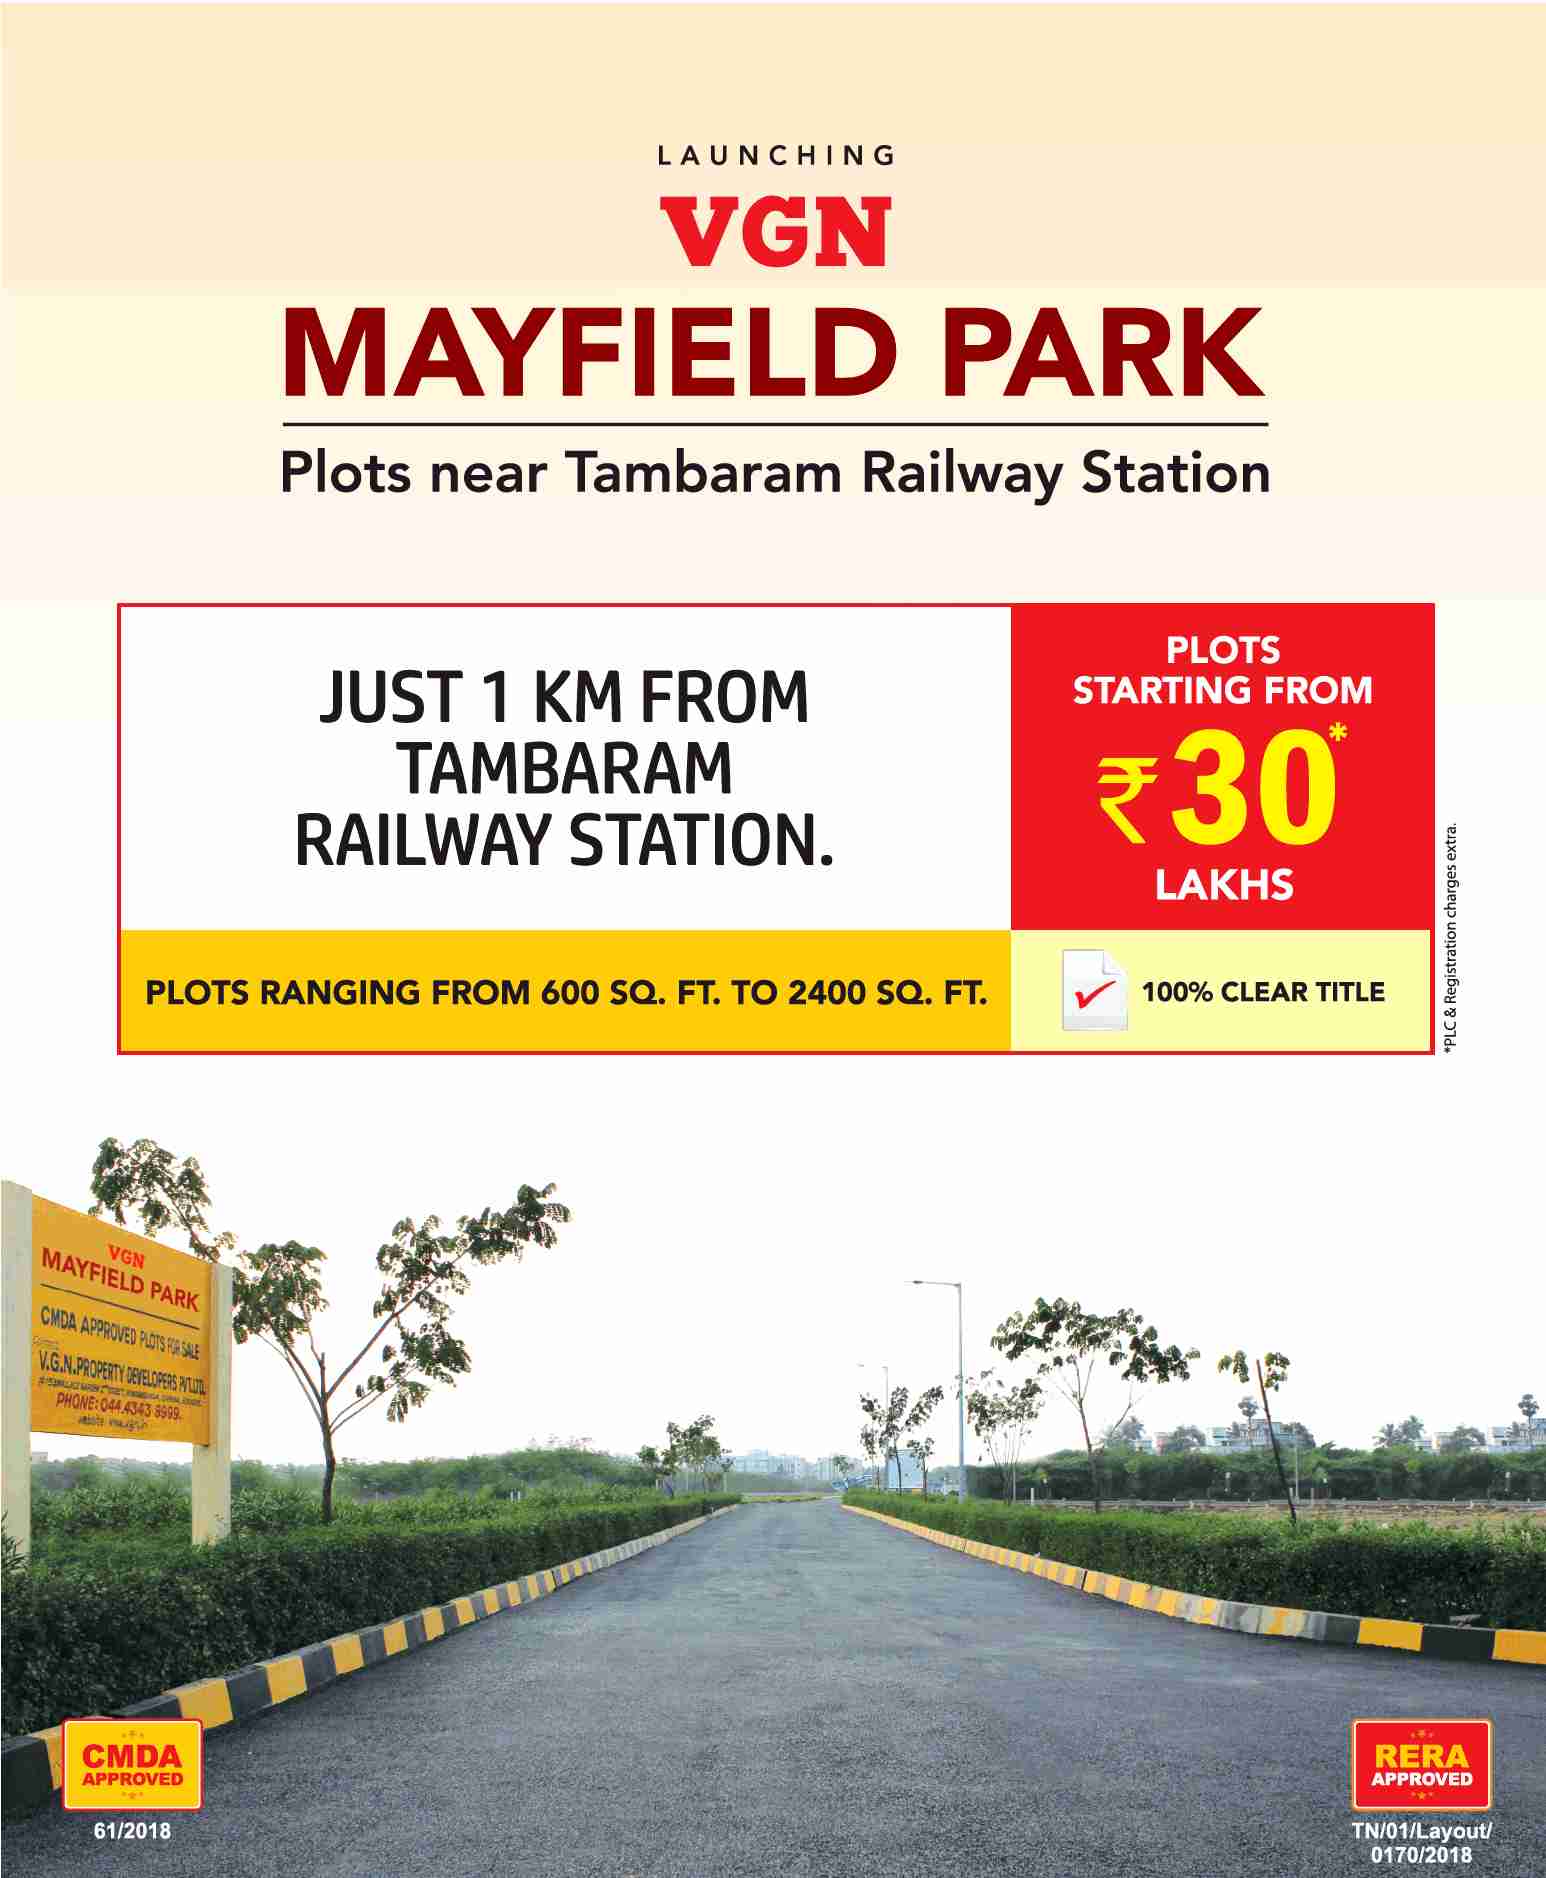 Launching VGN Mayfield Park at Tambaram, Chennai